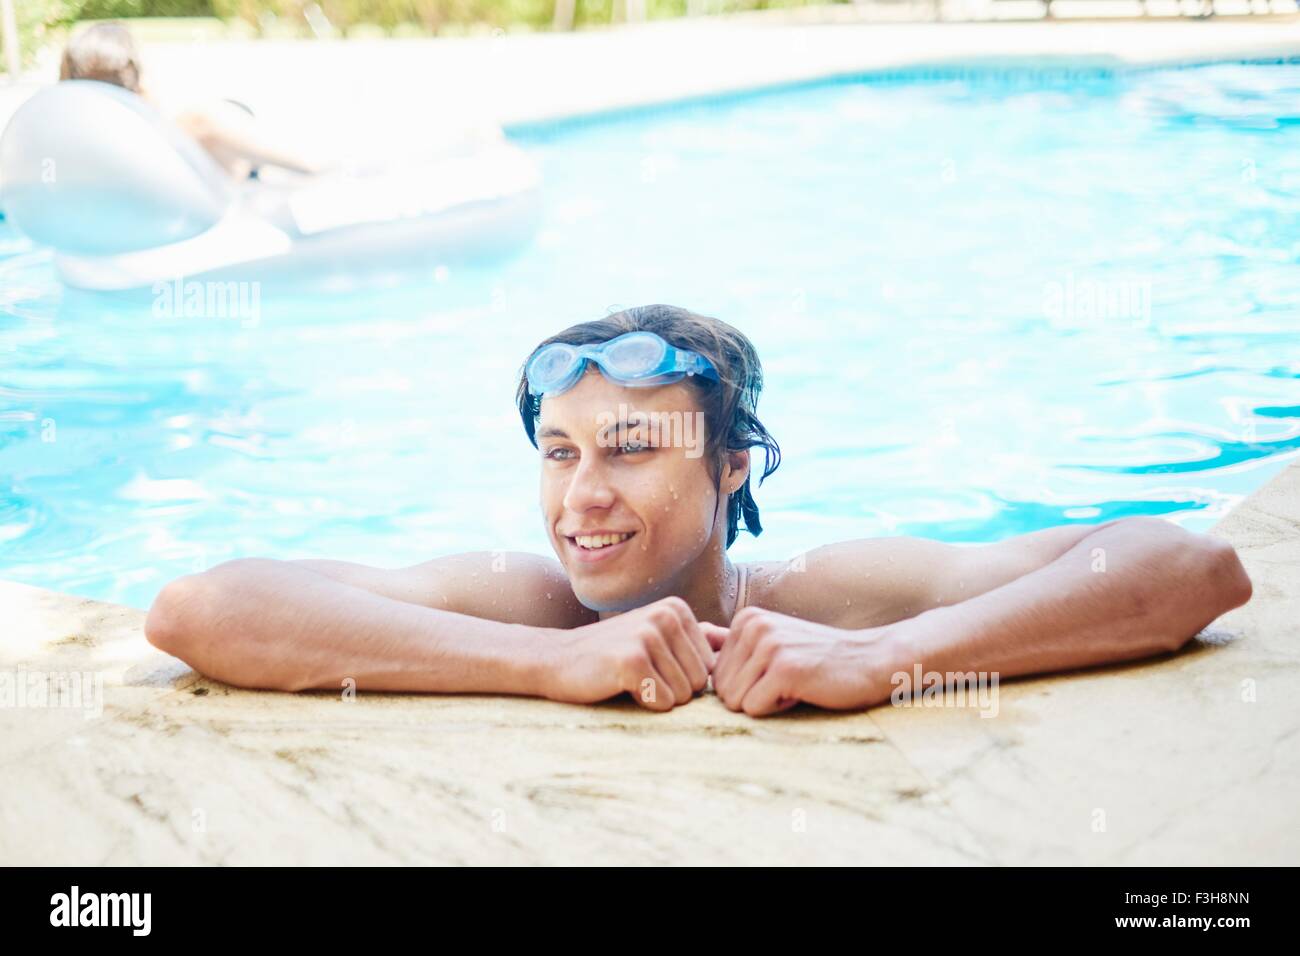 Porträt von lächelnden jungen Mann mit nassen Haaren im Schwimmbad Stockfoto